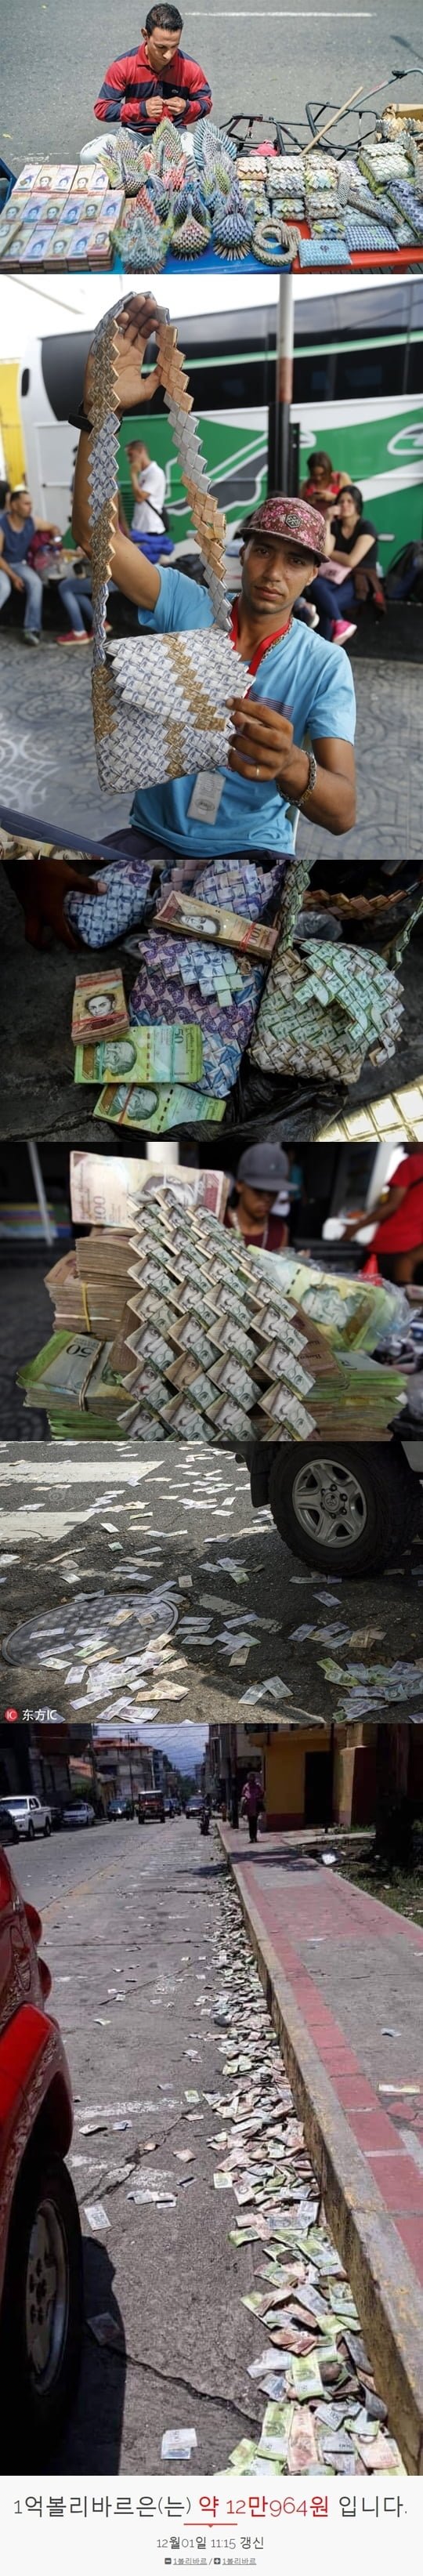 베네수엘라 화폐가치 근황 ㄷ..jpg